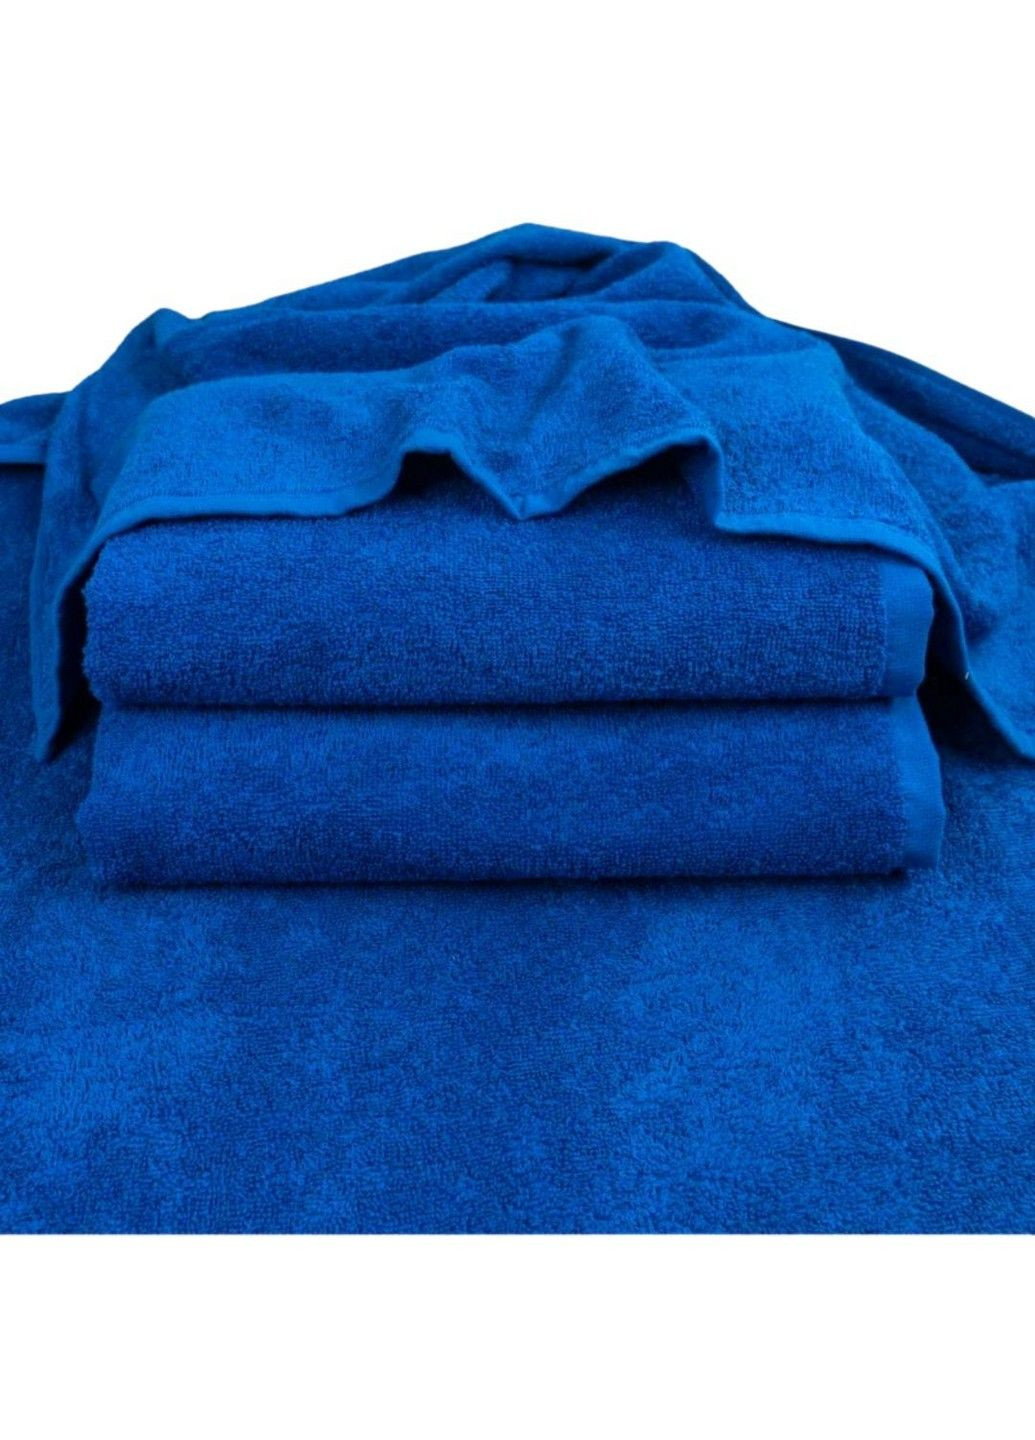 GM Textile рушник махровий, 70*140 см синій виробництво - Узбекистан